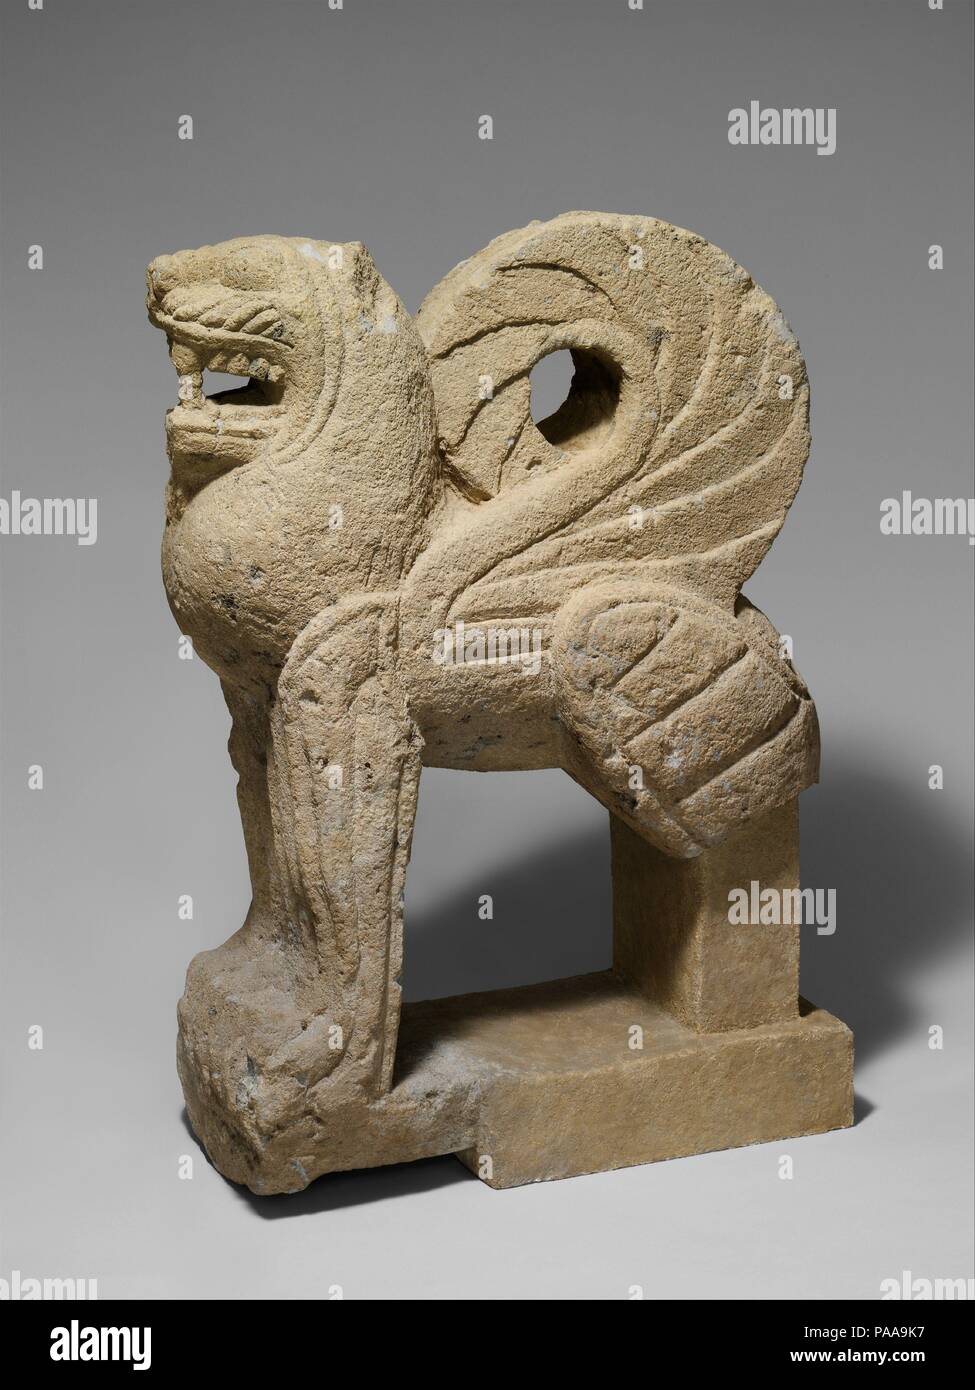 Nenfro statua di un leone alato. La cultura etrusca. Dimensioni: H. 37 1/2 in. (95,3 cm); lunghezza 28 3/4 in. (73 cm); larghezza a haunches 13 3/4 in. (35 cm). Data: ca. 550 A.C. Diverse statue di questo tipo, realizzata in nenfro, una sorta di pietra vulcanica usato estensivamente in corrispondenza di Vulci, raffigurano leoni alati e sfingi. Questi sono stati impostati per proteggere gli accessi alla camera sotterranea tombe coperte da un tumulo (tumulo di terracotta). Essi spesso appaiono in coppie e rappresentano la risposta degli Etruschi a una lunga tradizione di custode figure che risale all'antico Egitto e nel Vicino Oriente. Museo: Metropolitan Mus Foto Stock